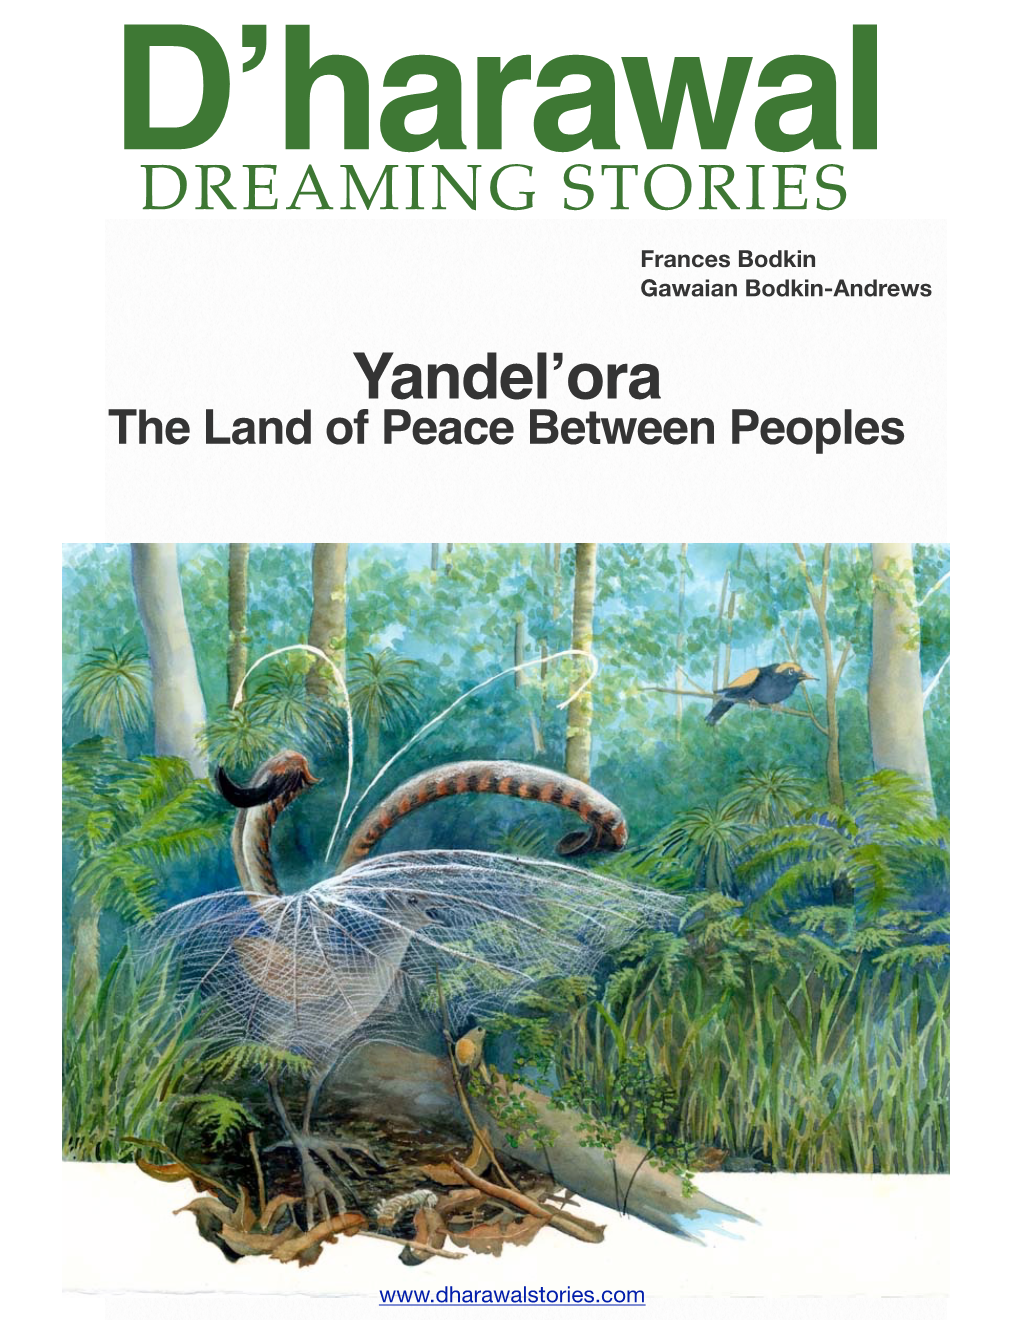 Yandel'ora DREAMING STORIES